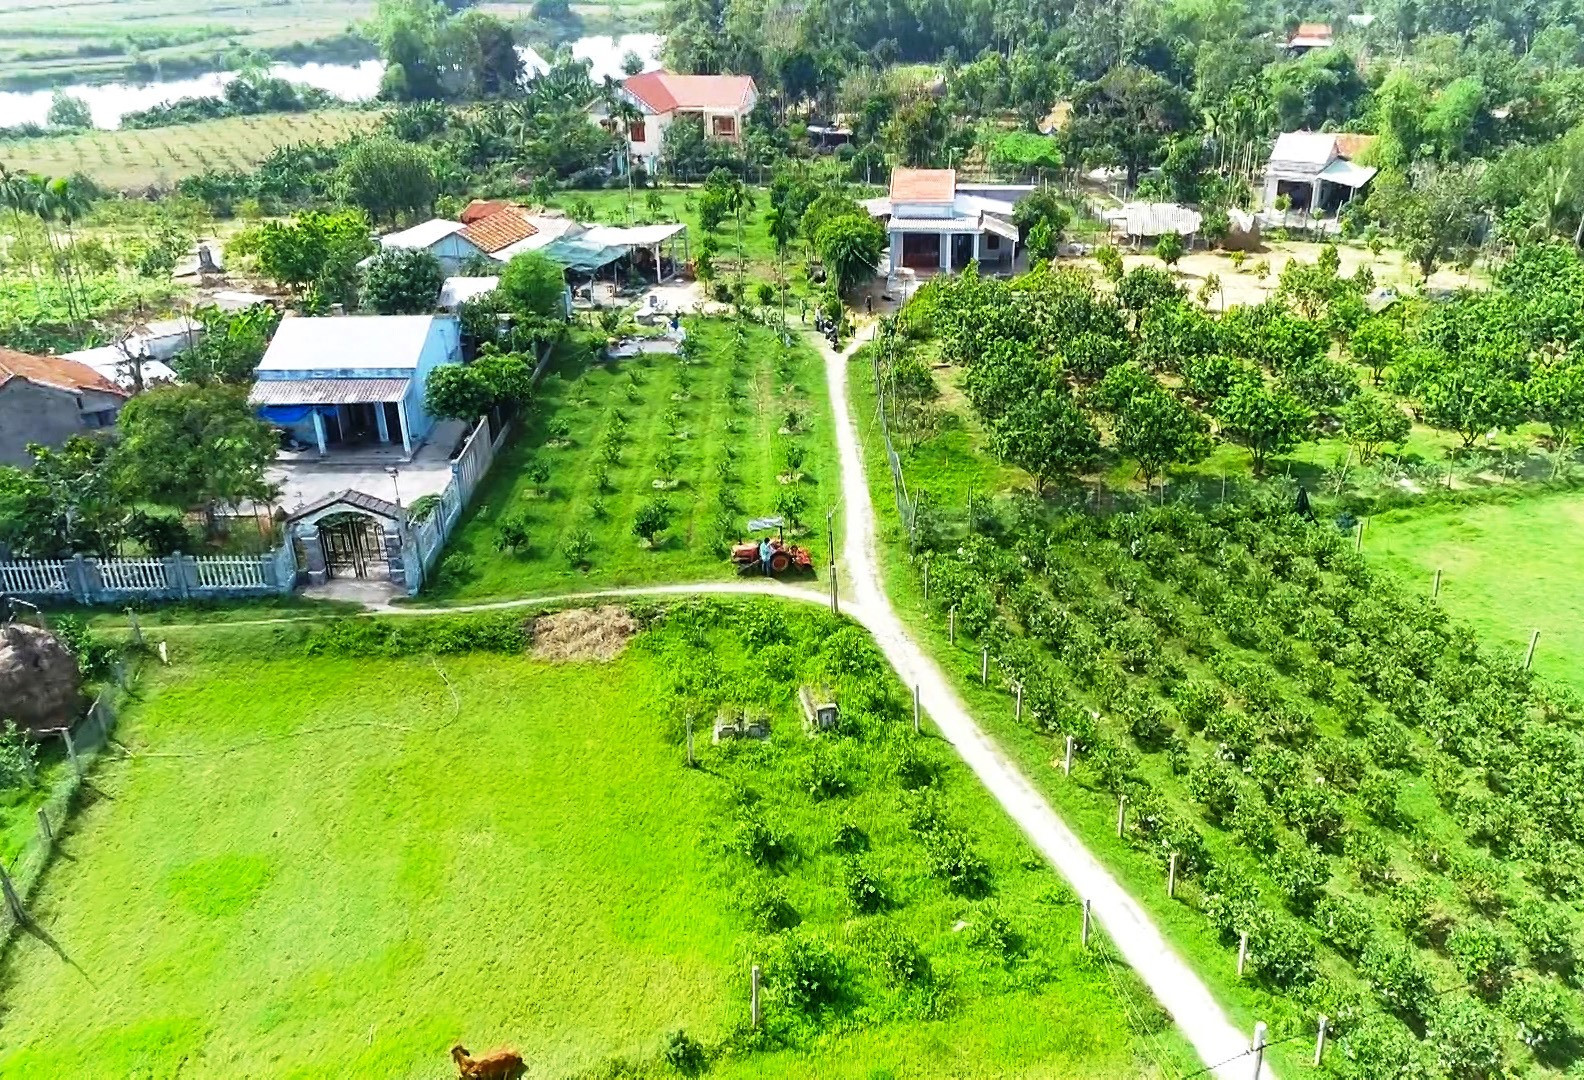 Người dân làng Cà Ban, thôn Thọ Tân cải tạo vườn để trồng cây ăn quả. Ảnh: T.S